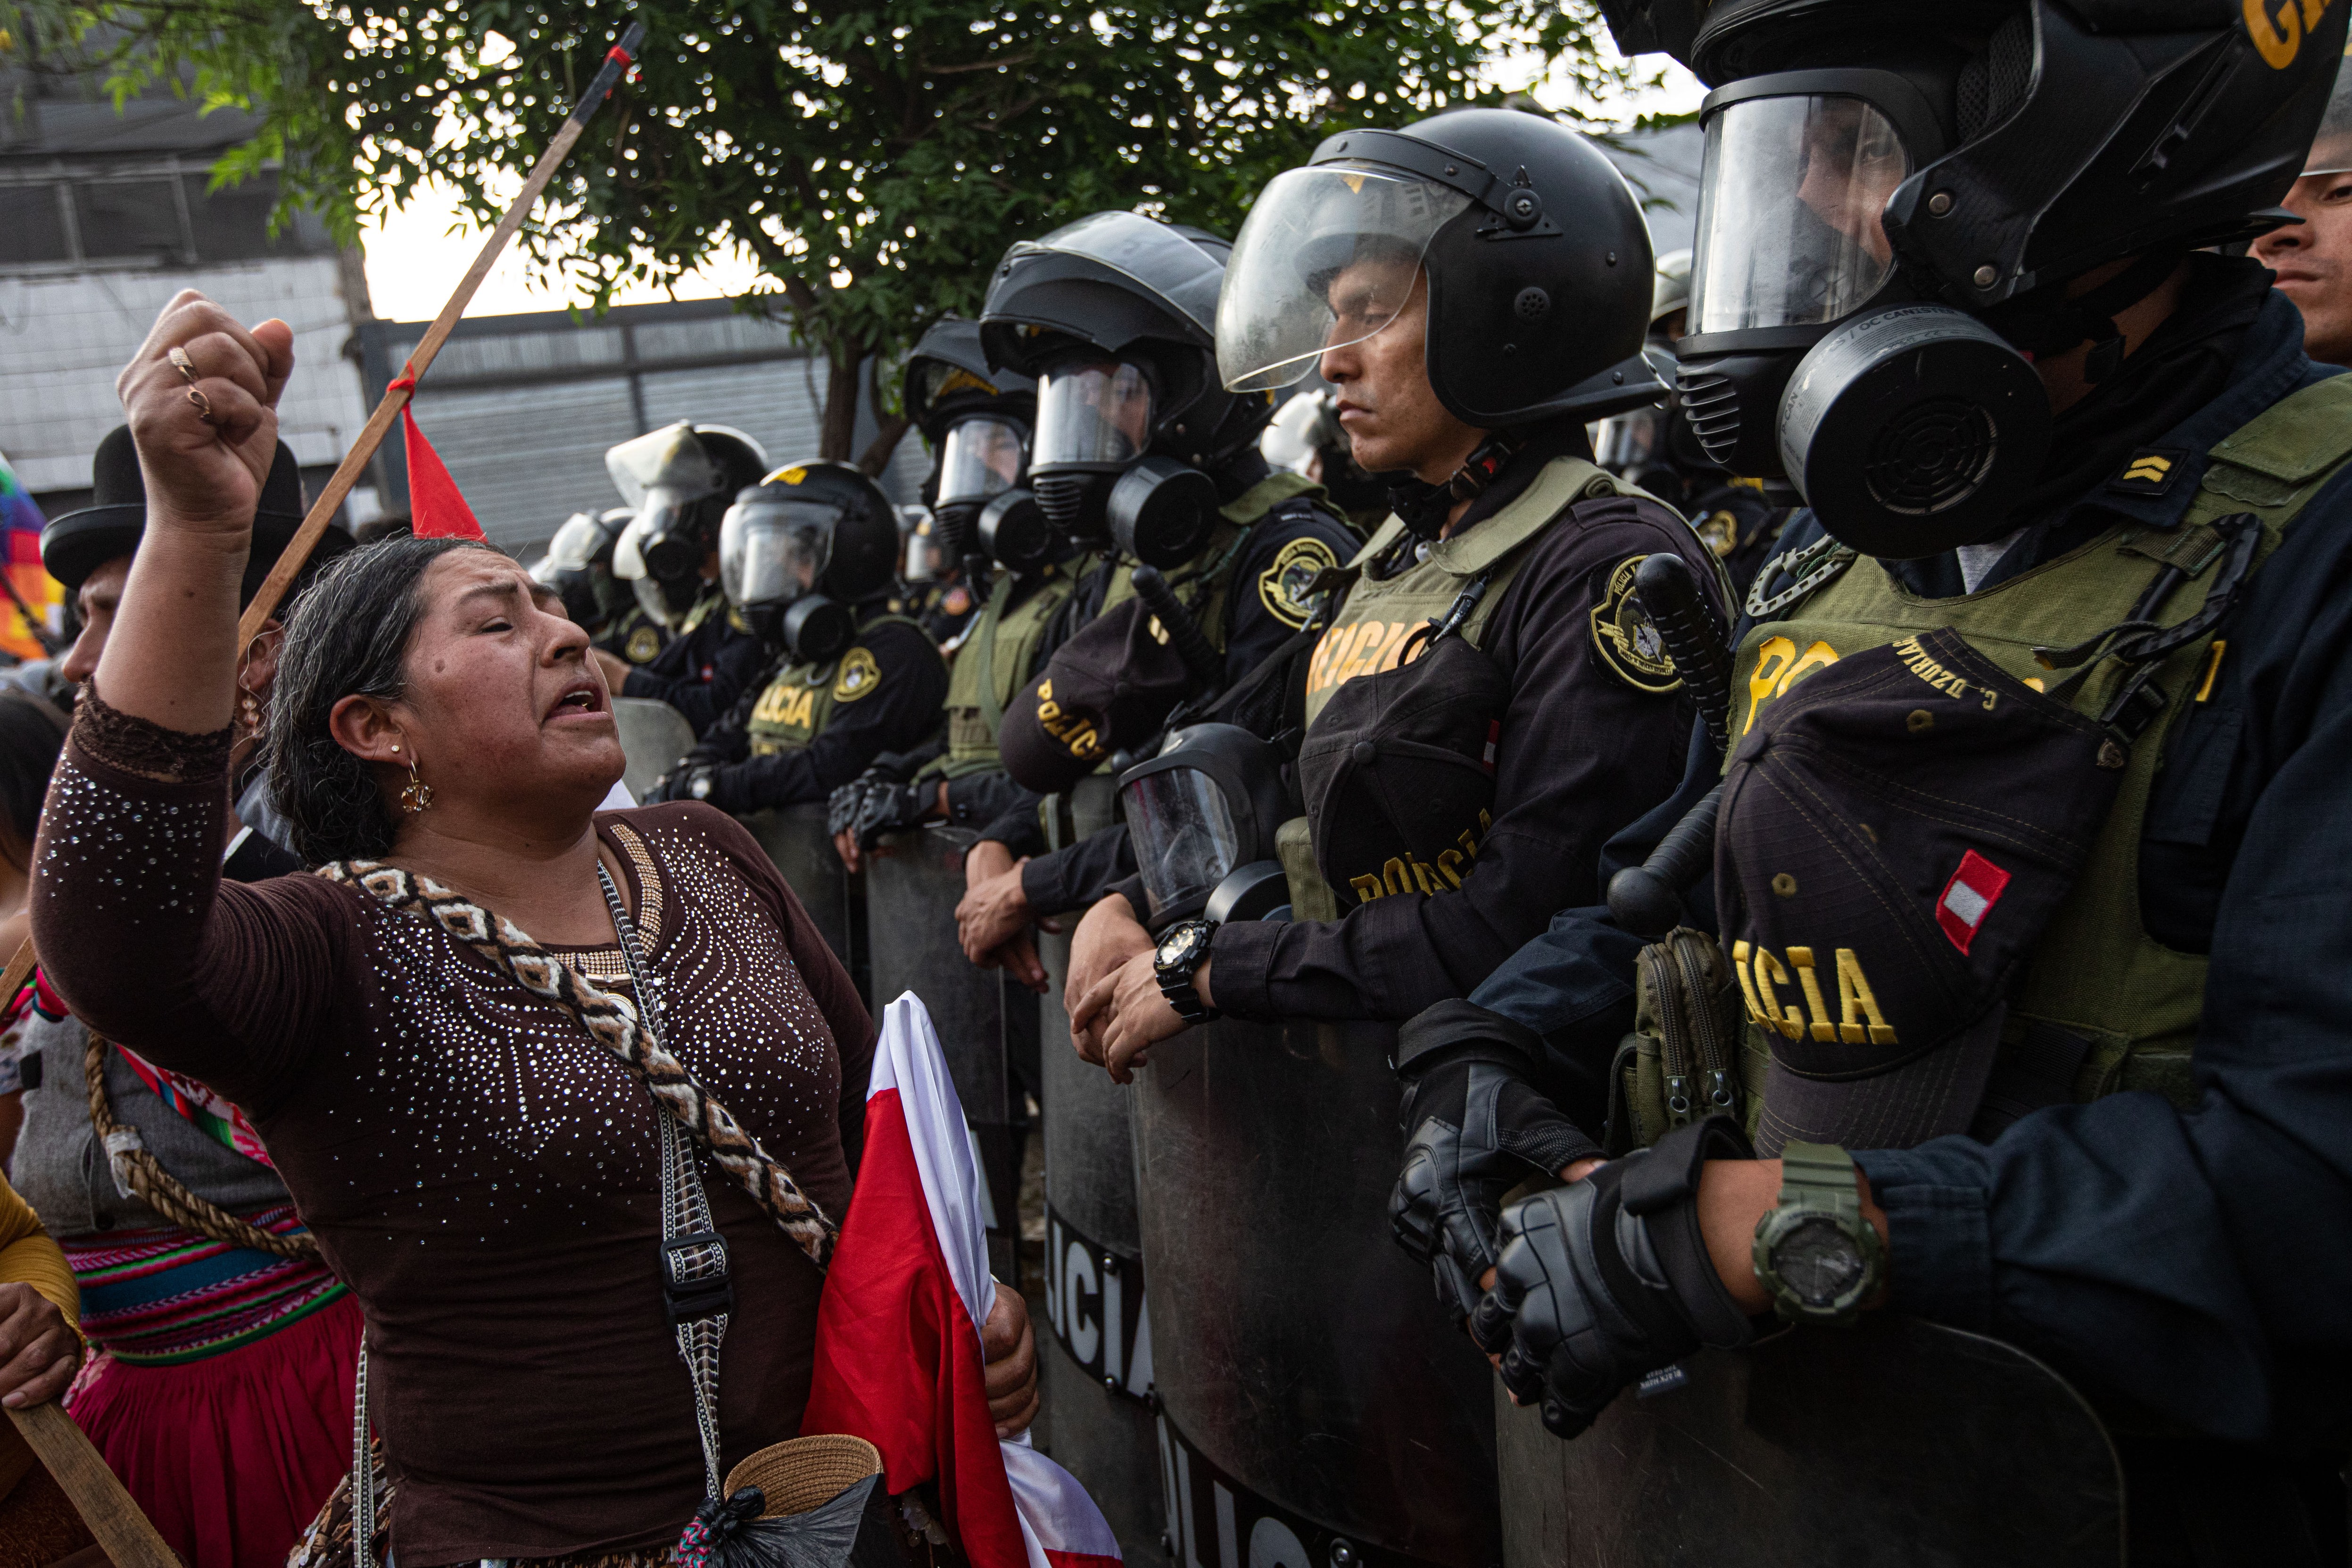 Südamerika - Proteste gegen peruanische Regierung weiten sich auf das ganze Land aus